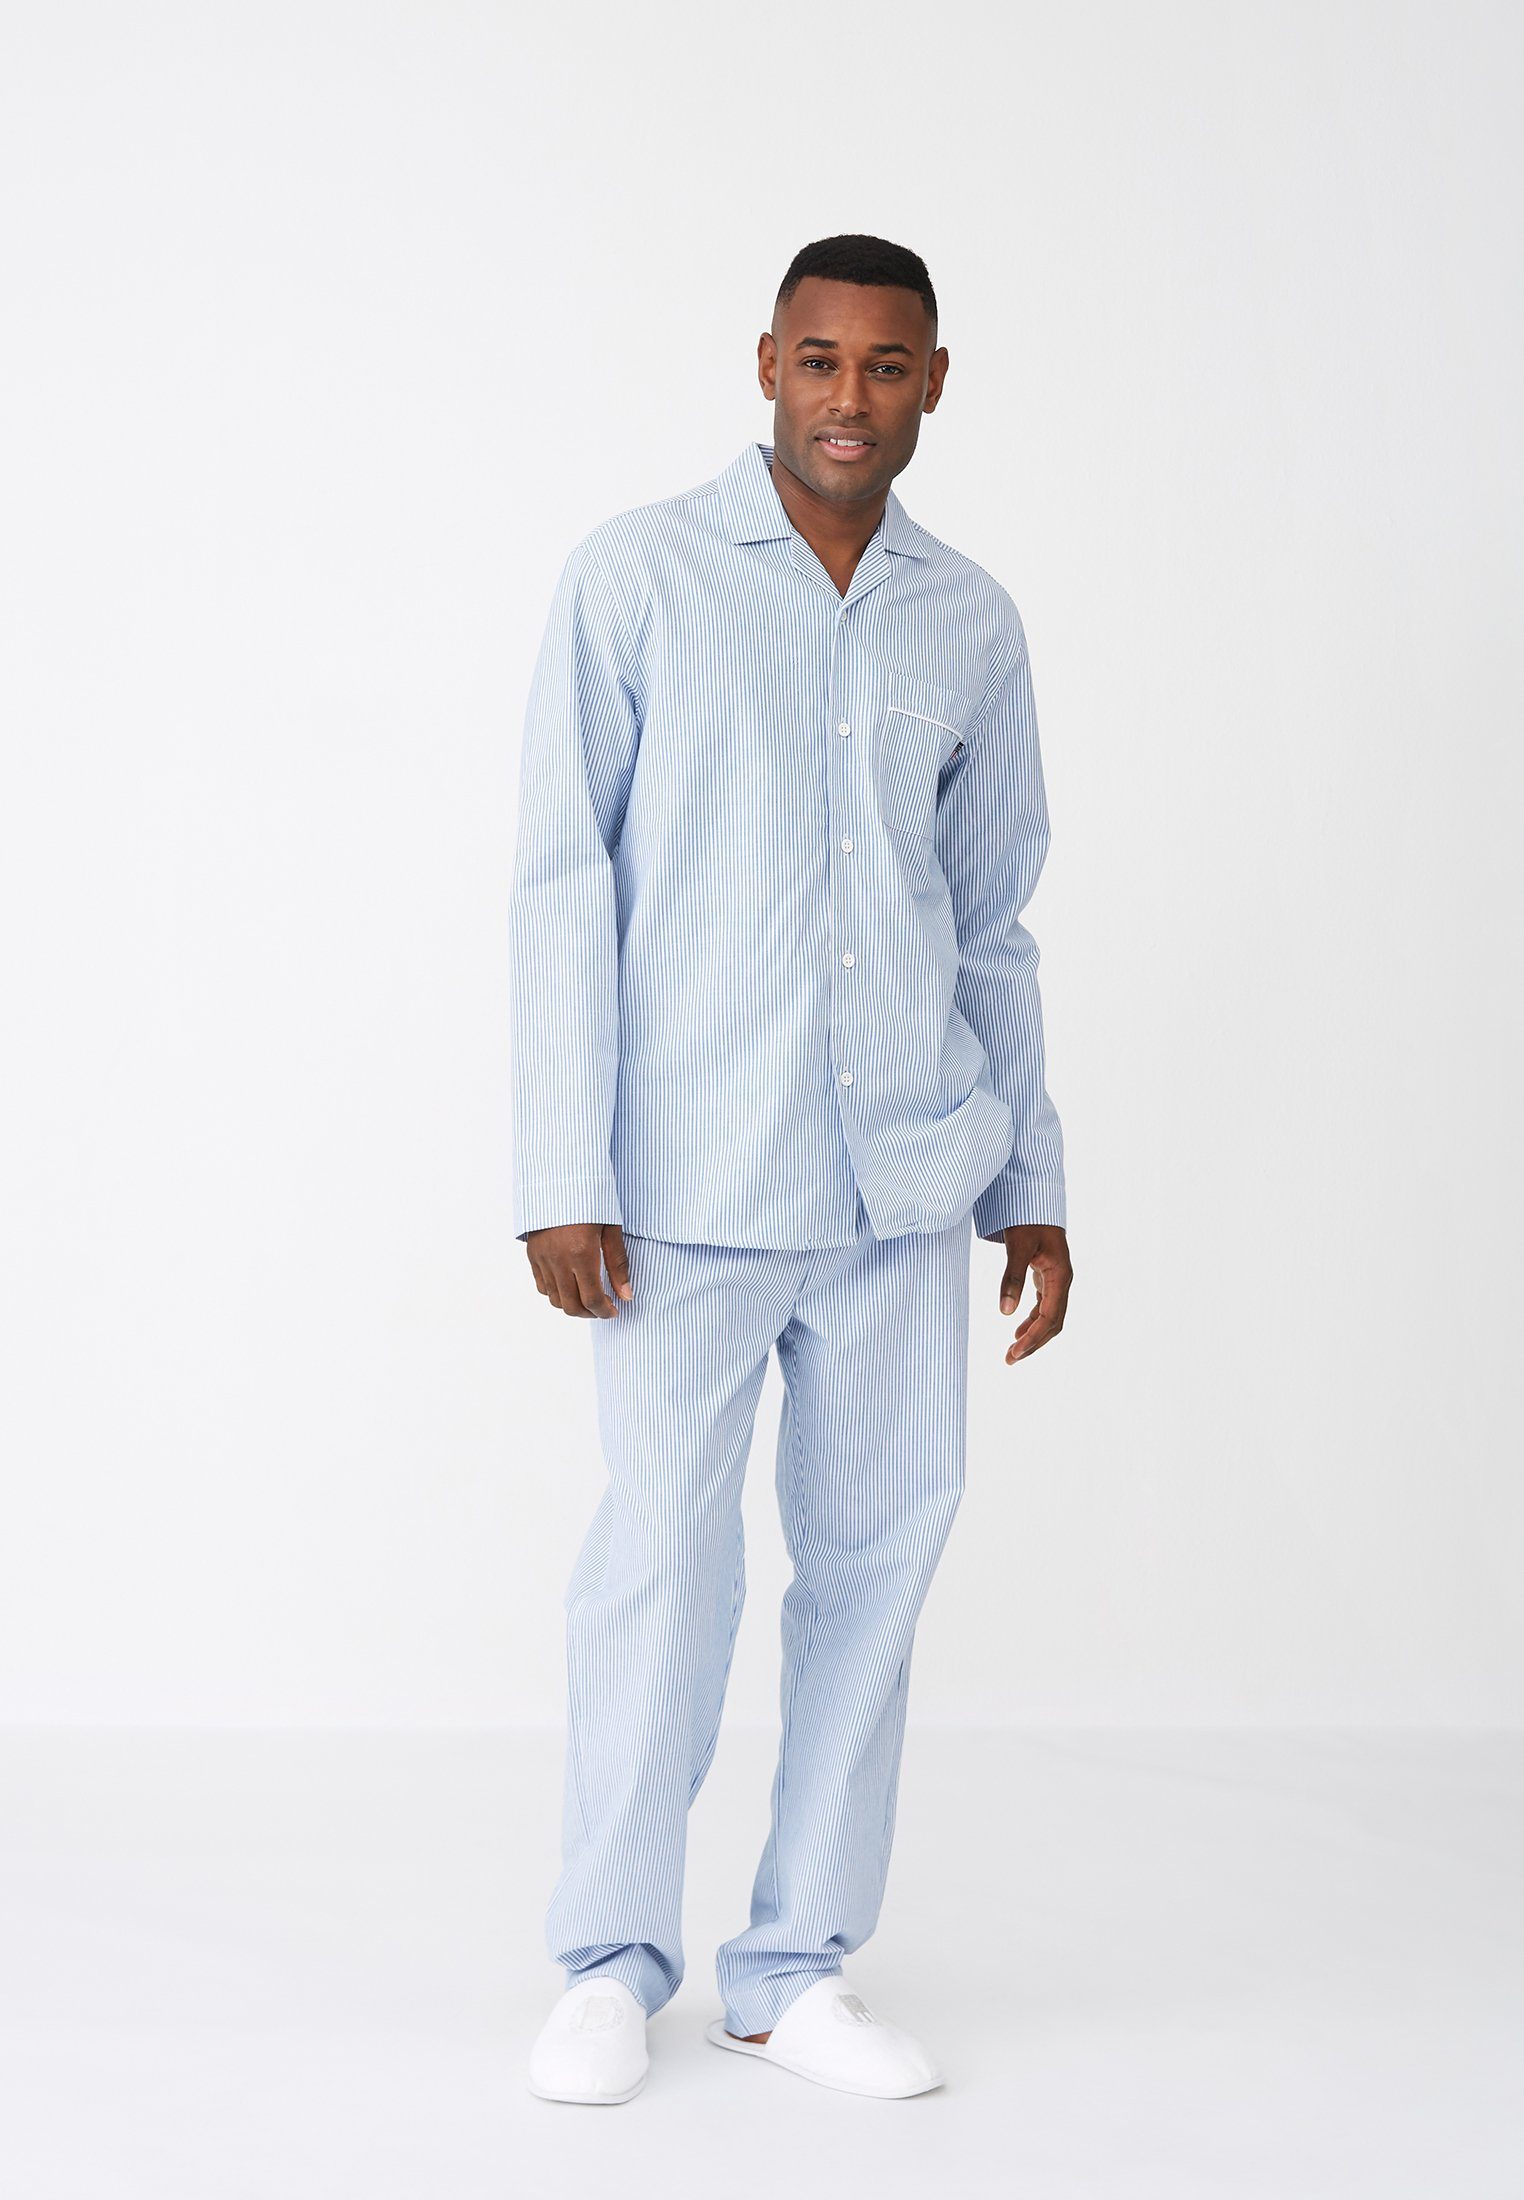 Organic lt Pants Men's Lexington blue/white Pyjamahose Cotton